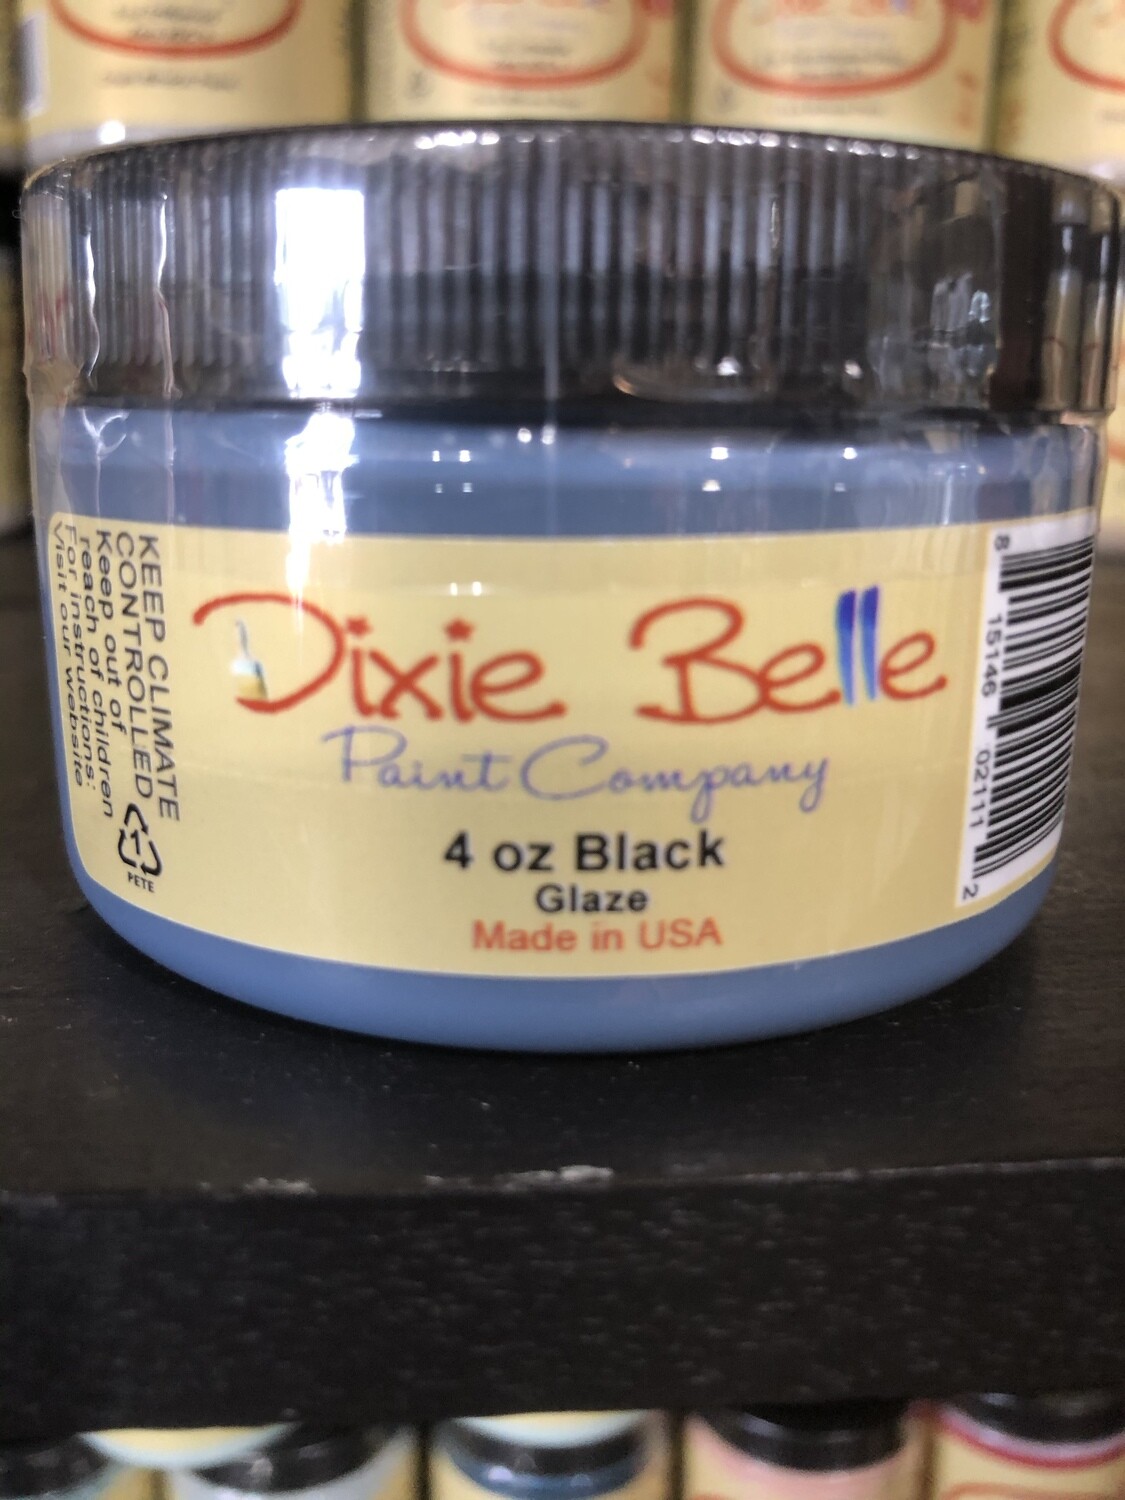 Dixie Belle Black Glaze